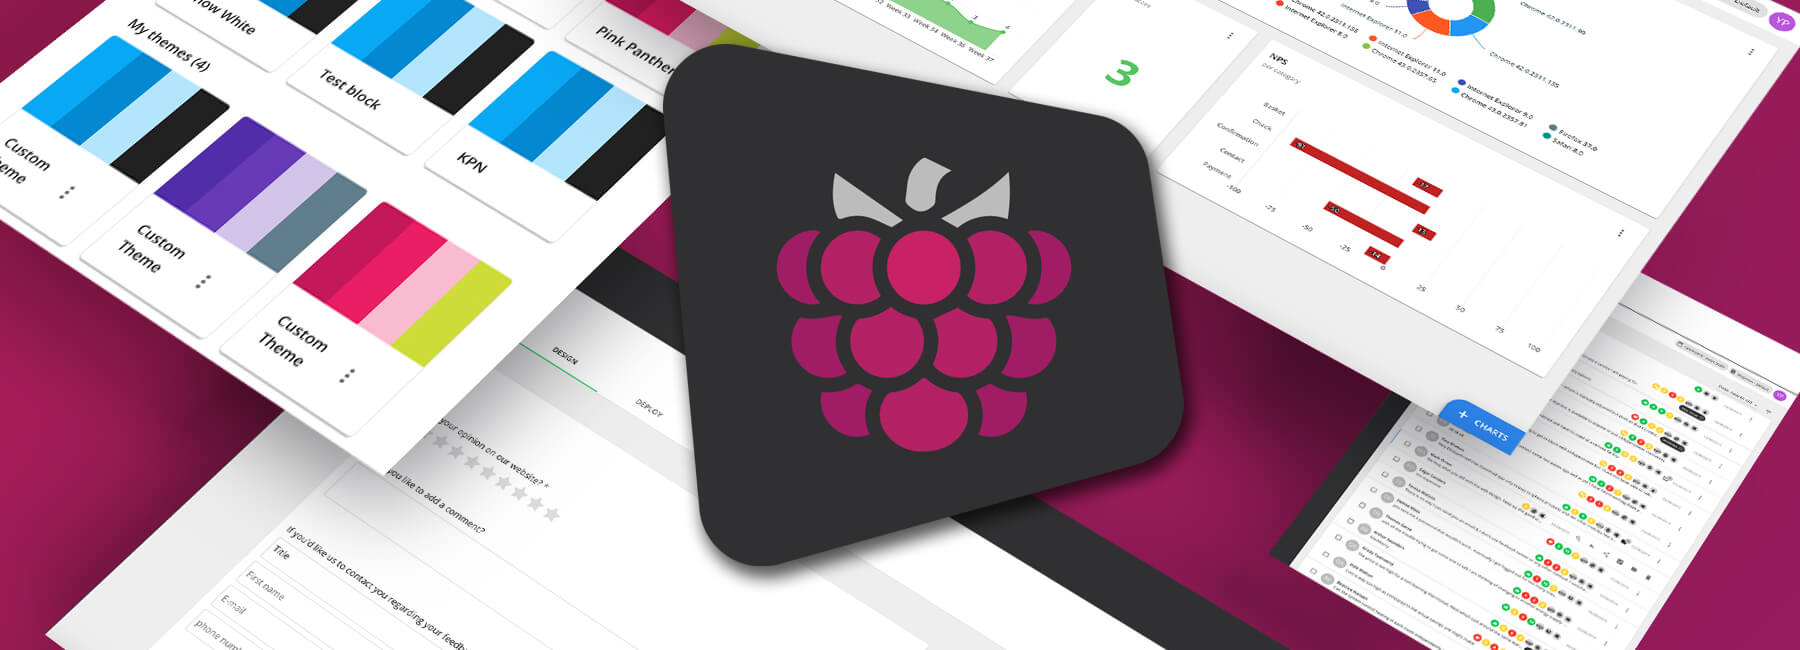 Mopinion dévoile sa nouvelle interface utilisateurs (UI) : Mopinion Raspberry